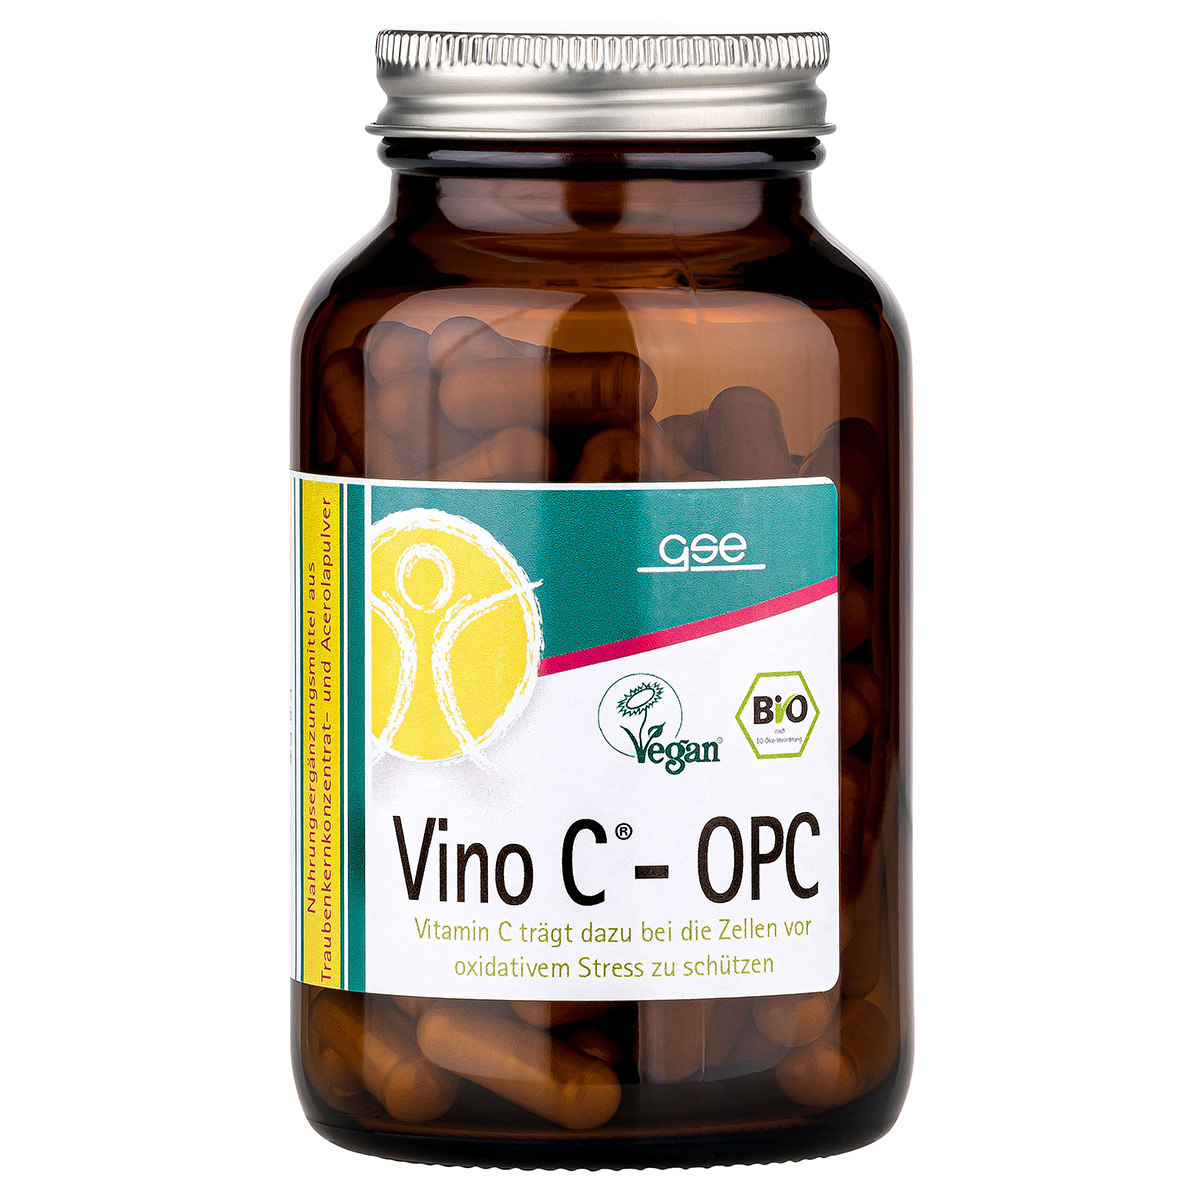 Vino C® - OPC (Bio)